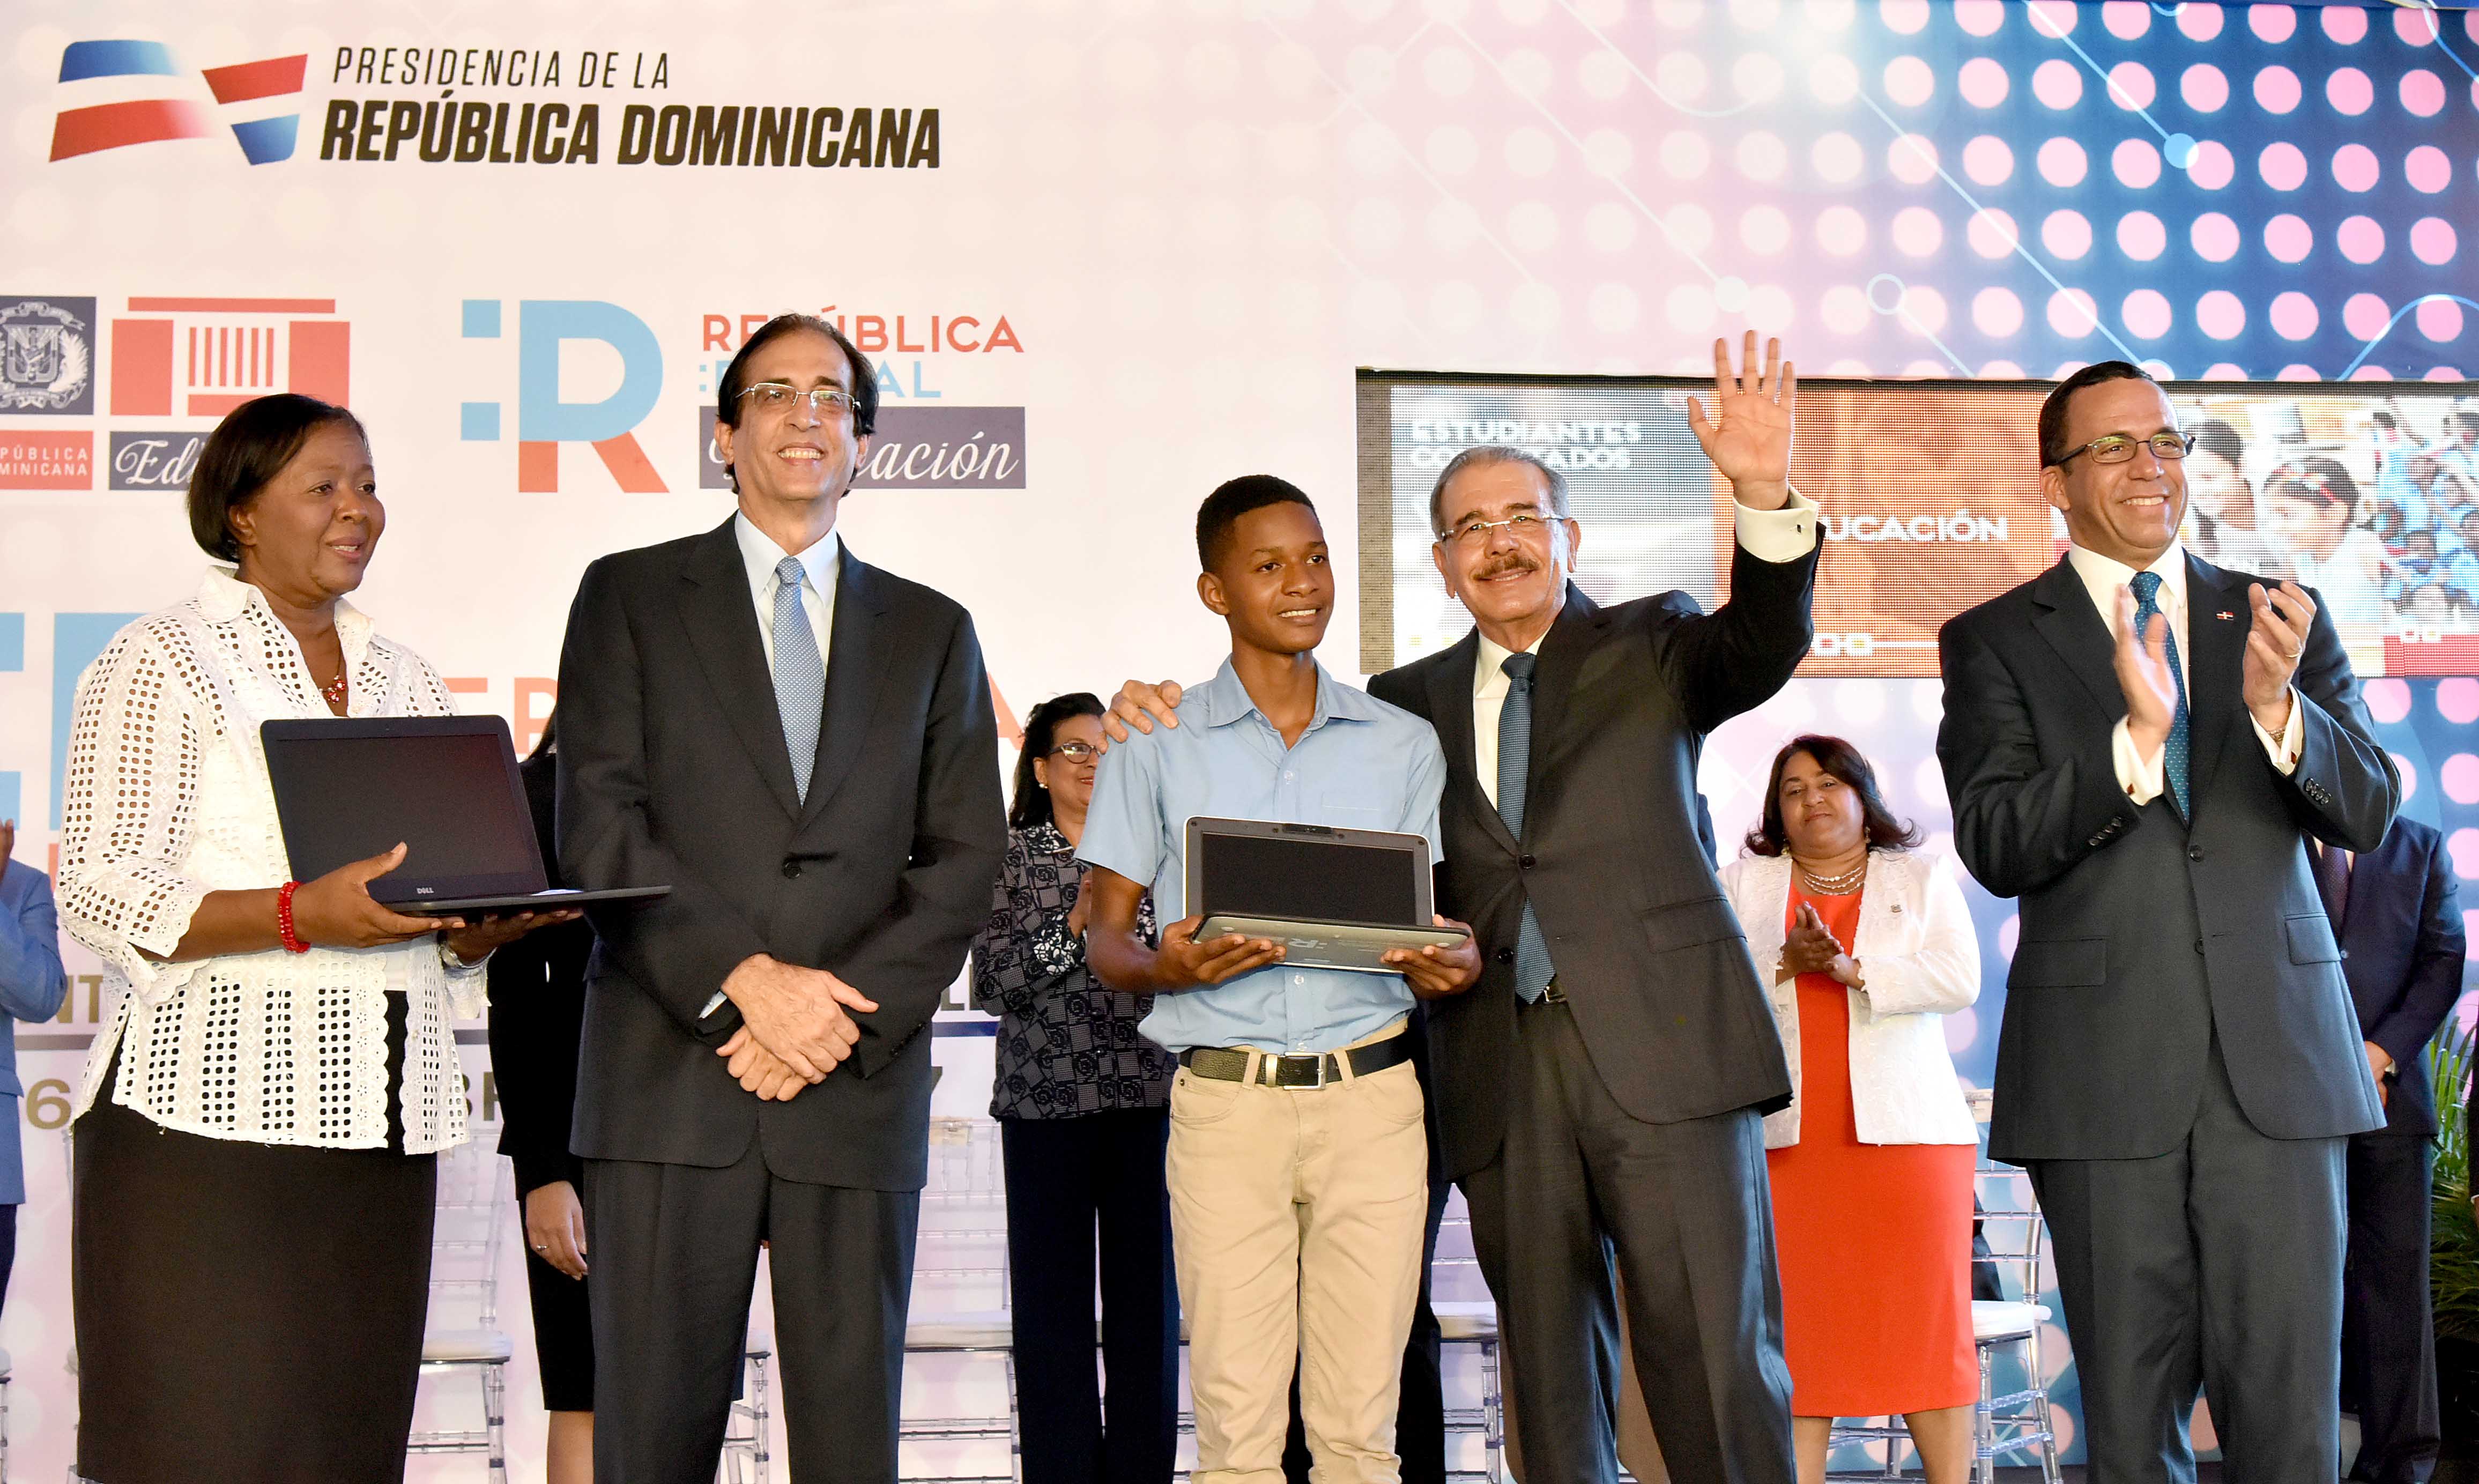  Presidente Danilo Medina pone en marcha República Digital Educación para llevar la enseñanza inclusiva tecnológica a cada rincón del país